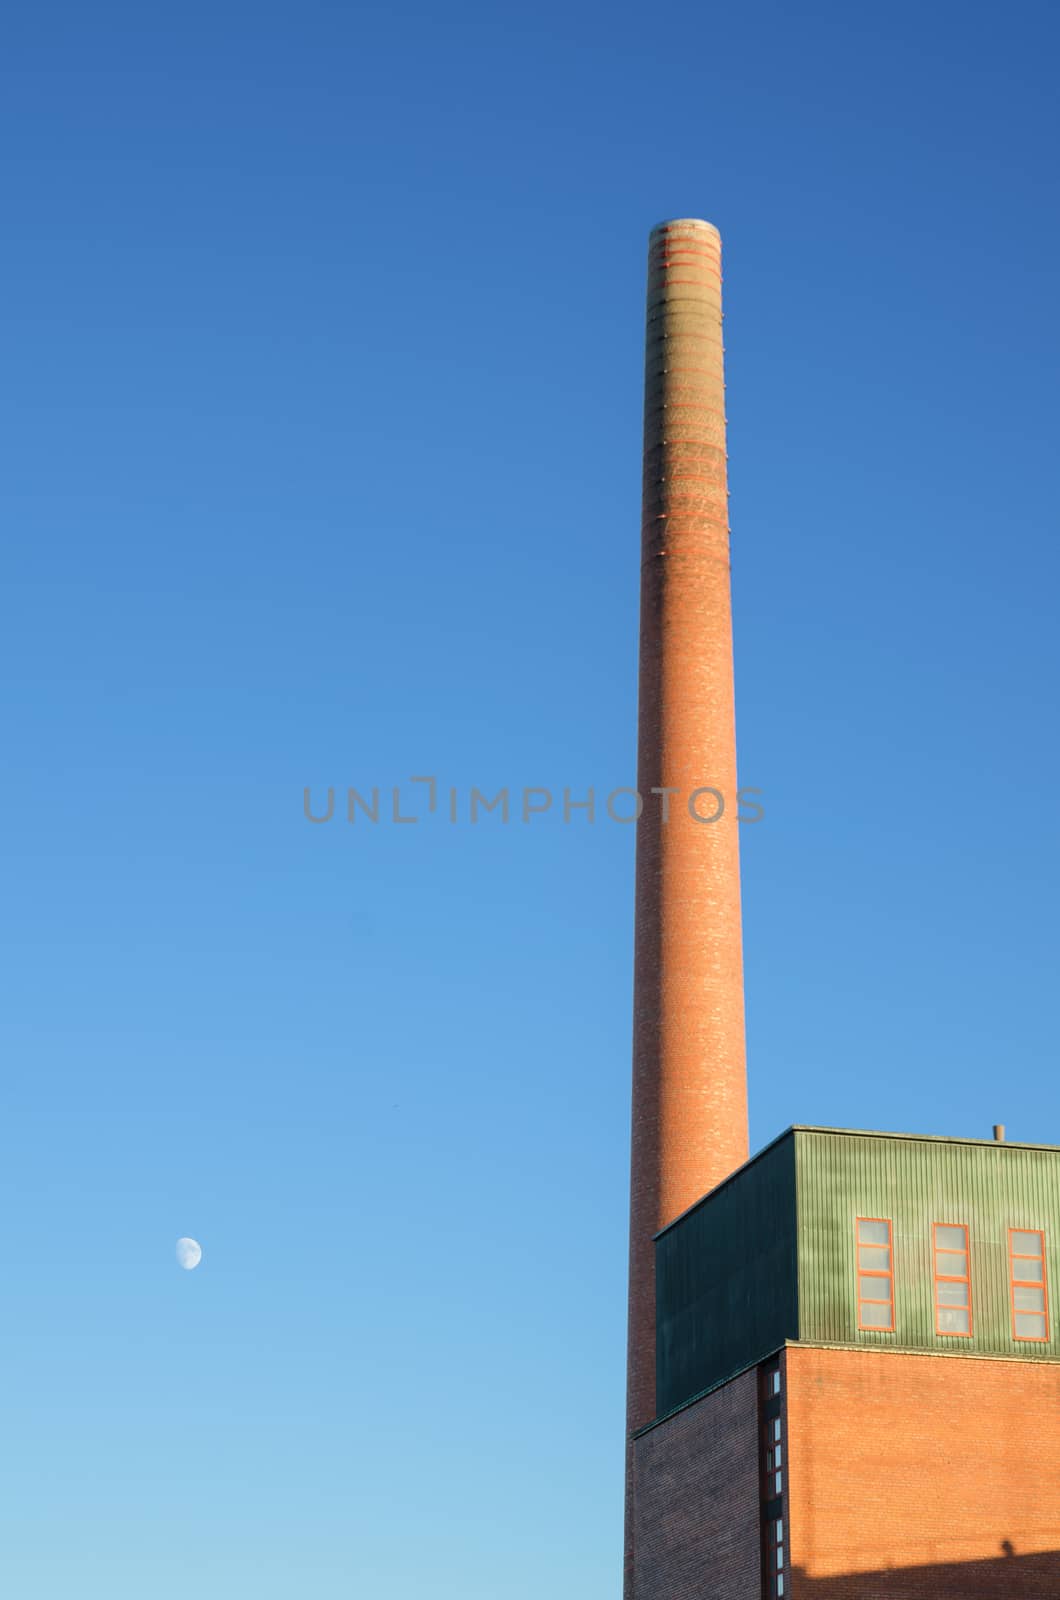 Industrial brick chimney at dusk.